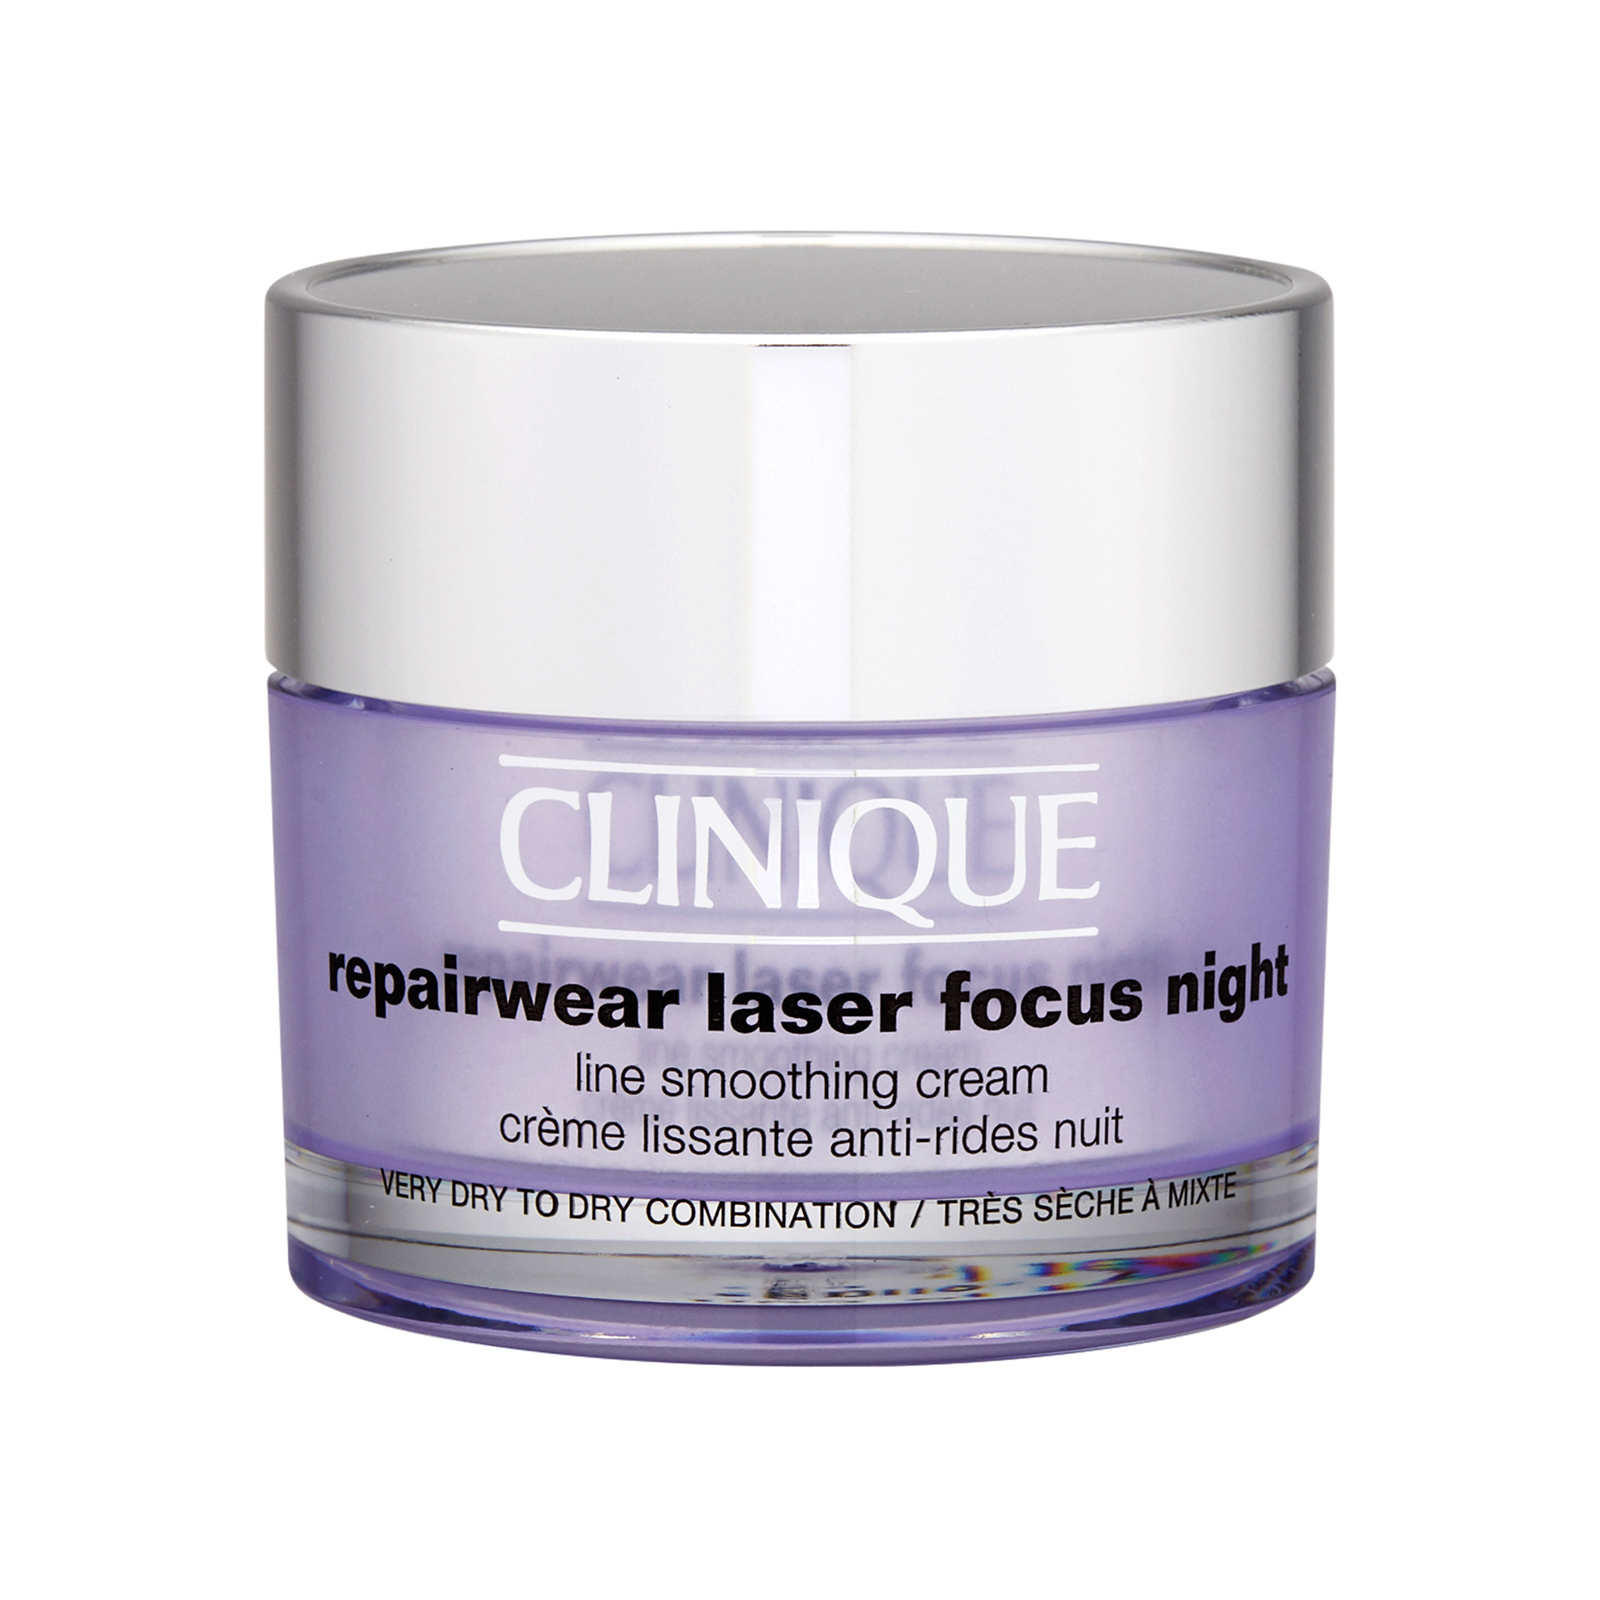 Repairwear Laser Focus Night Line Smoothing Cream